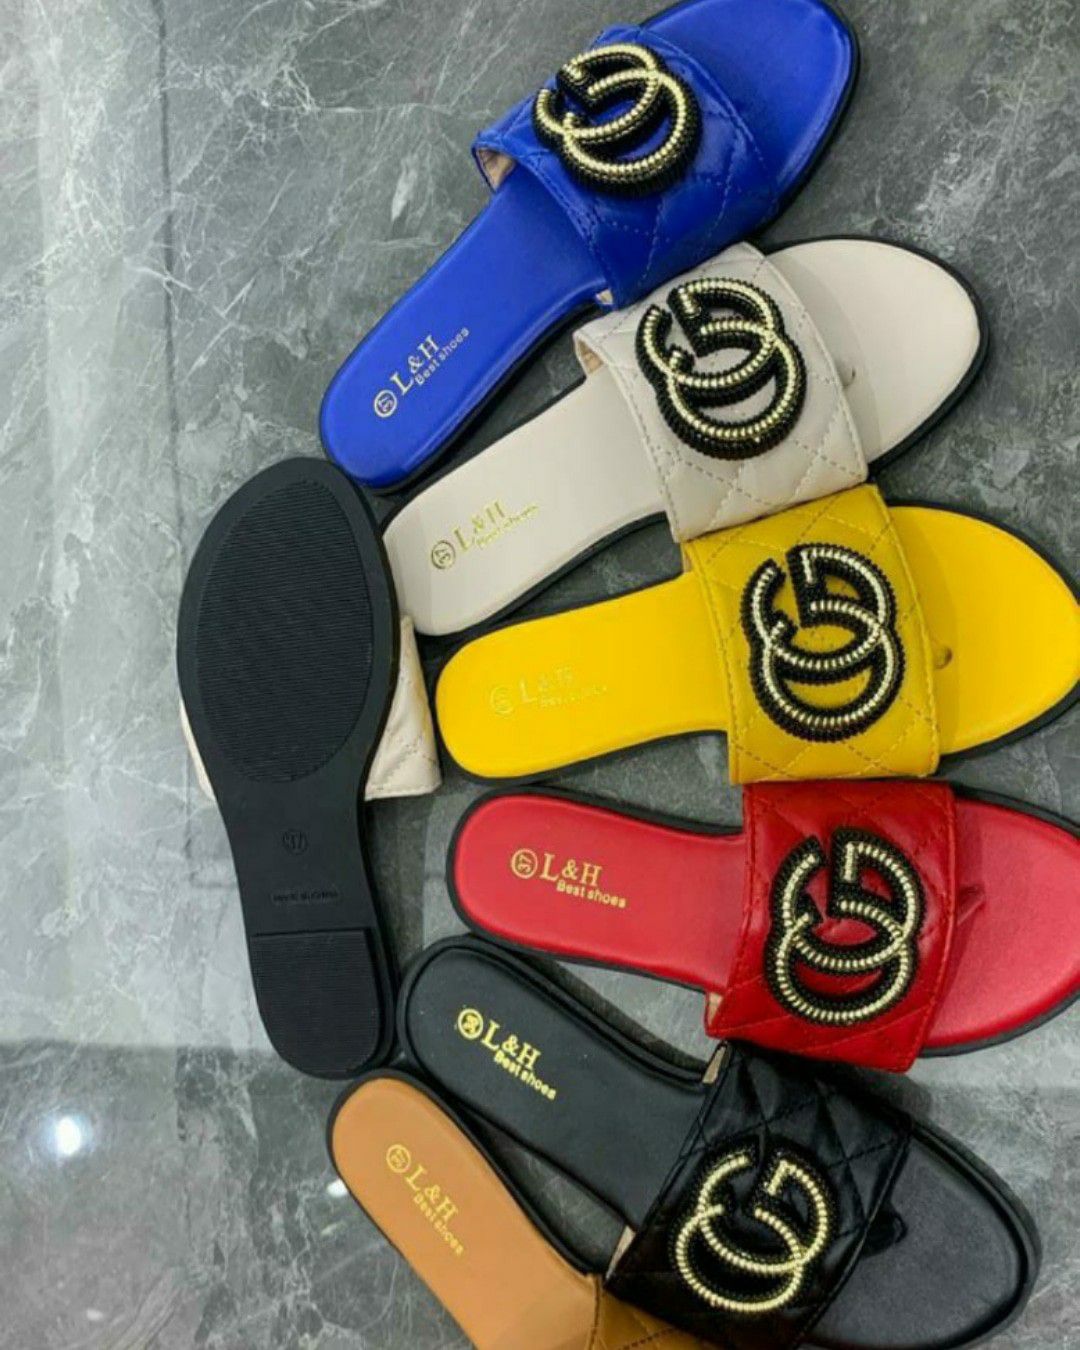 Sandals $50